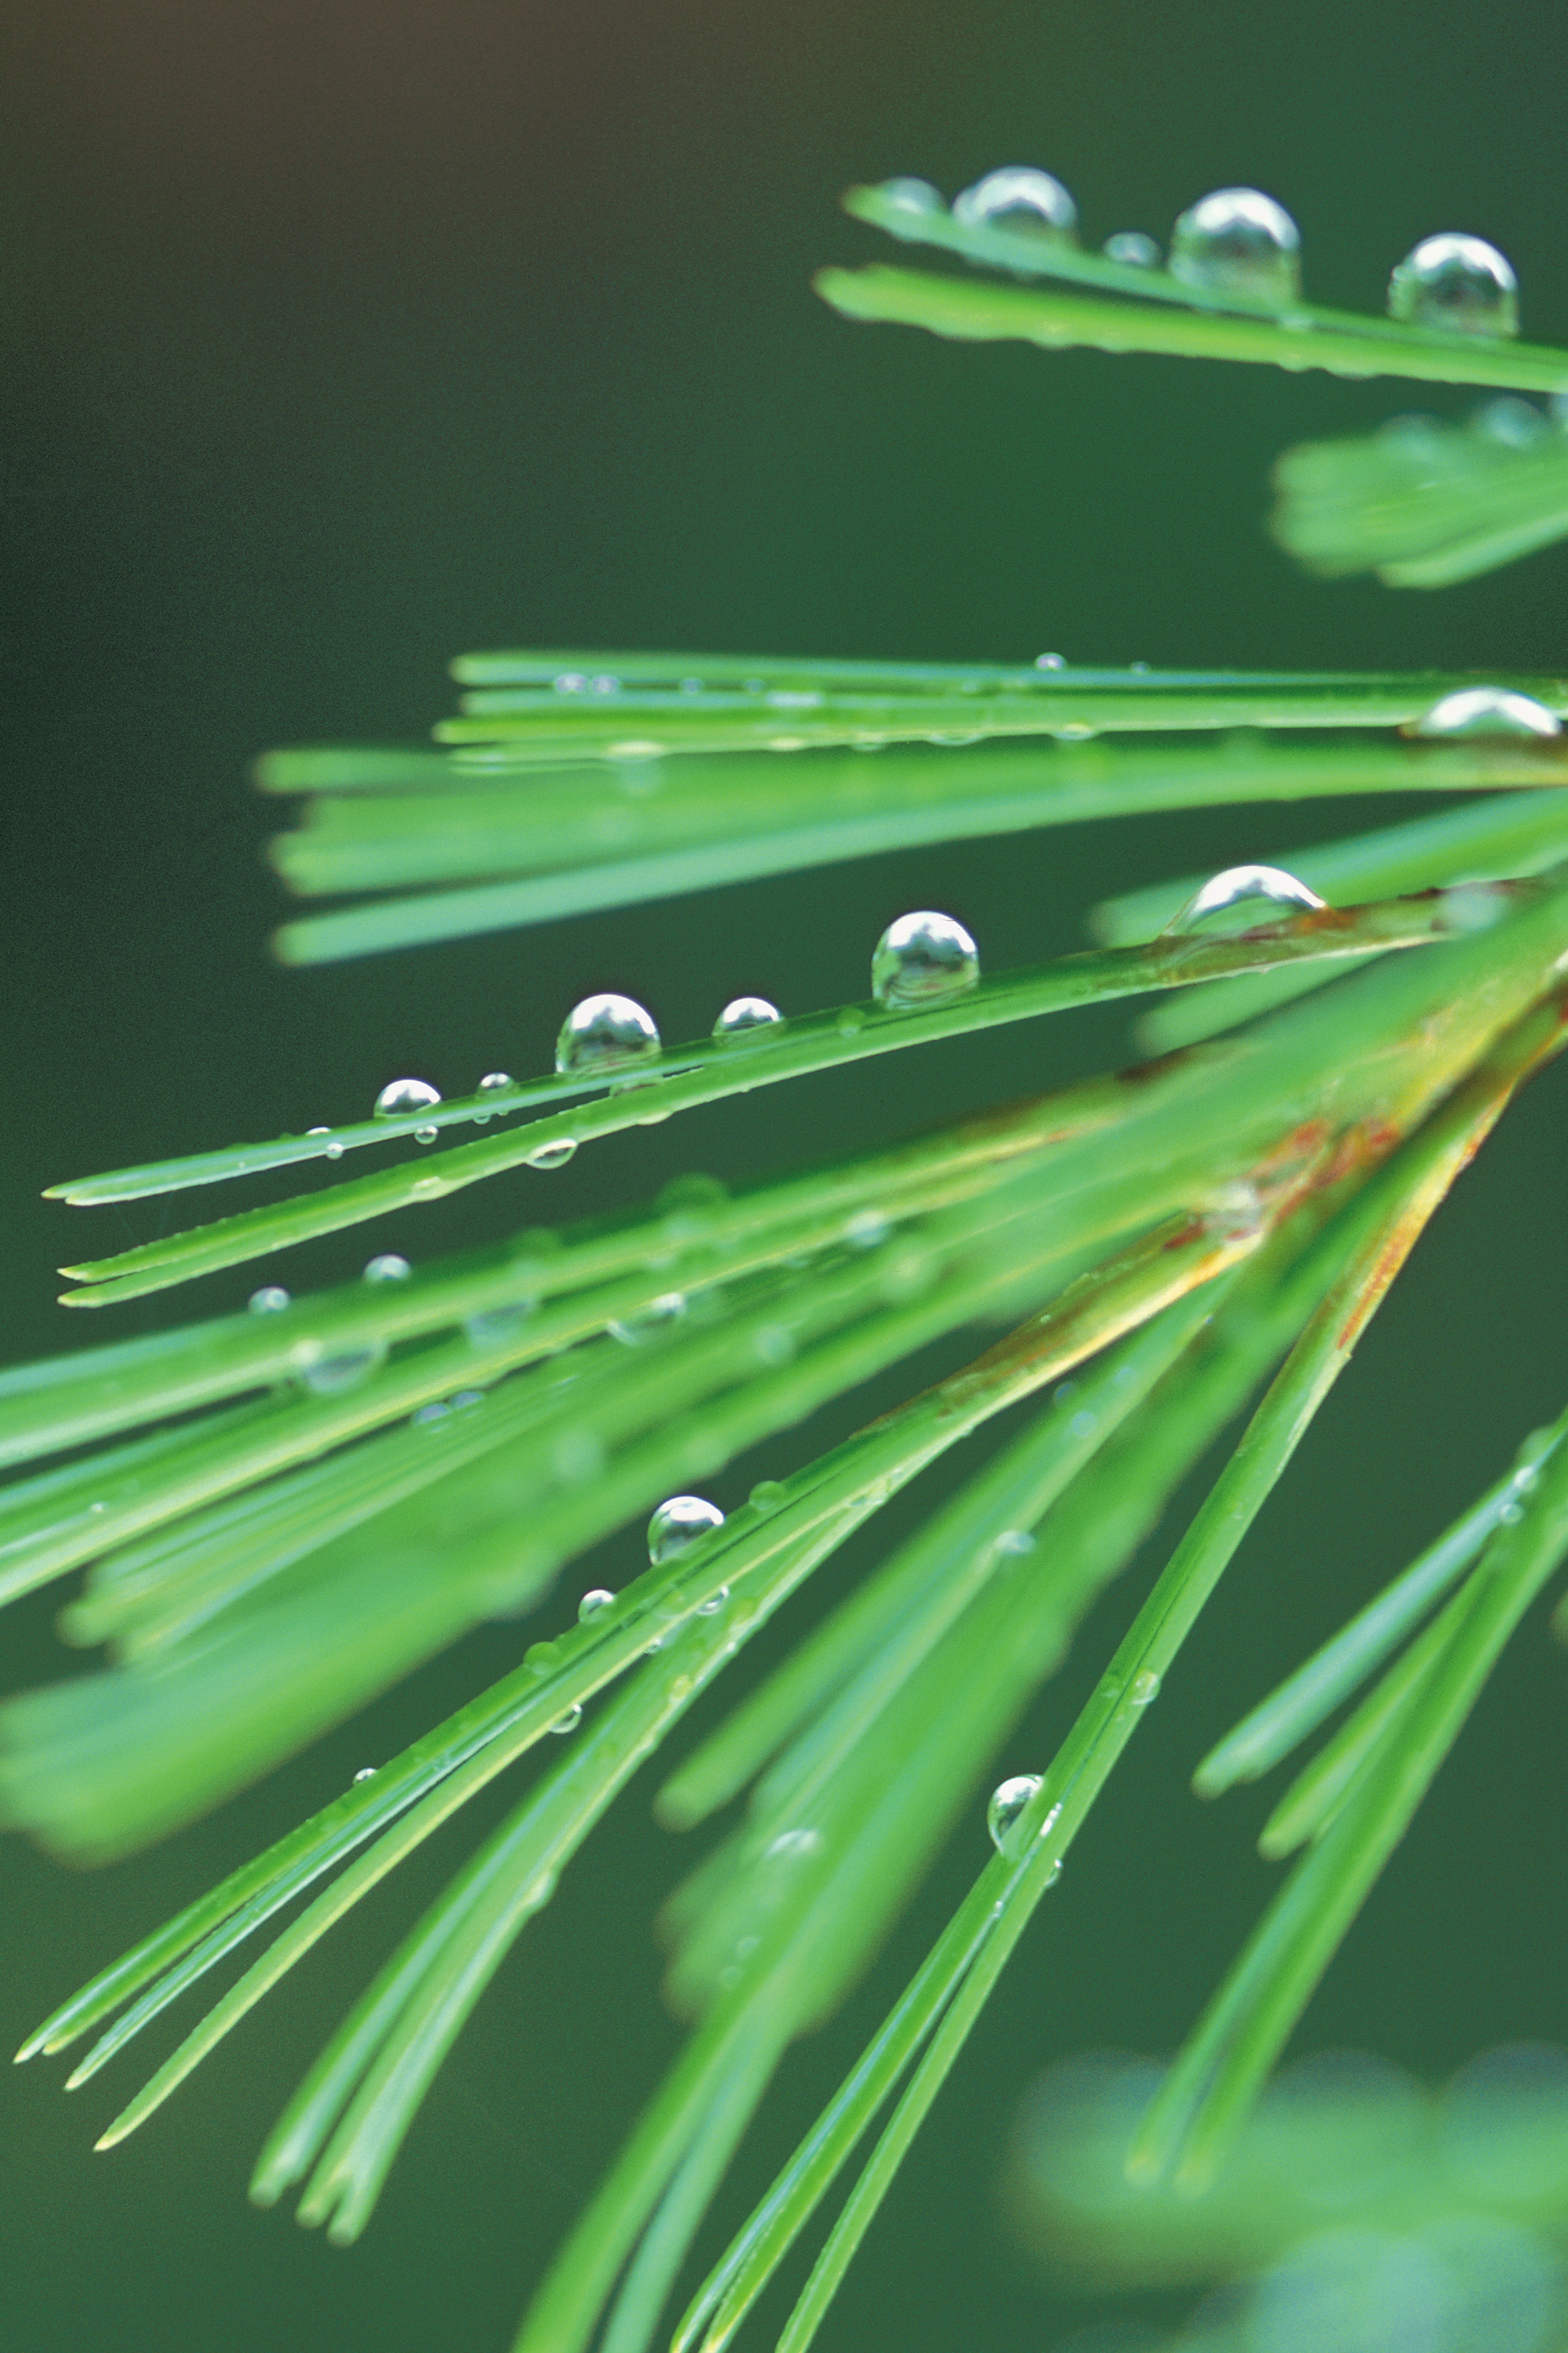 Do fallen pine needles make good mulch?